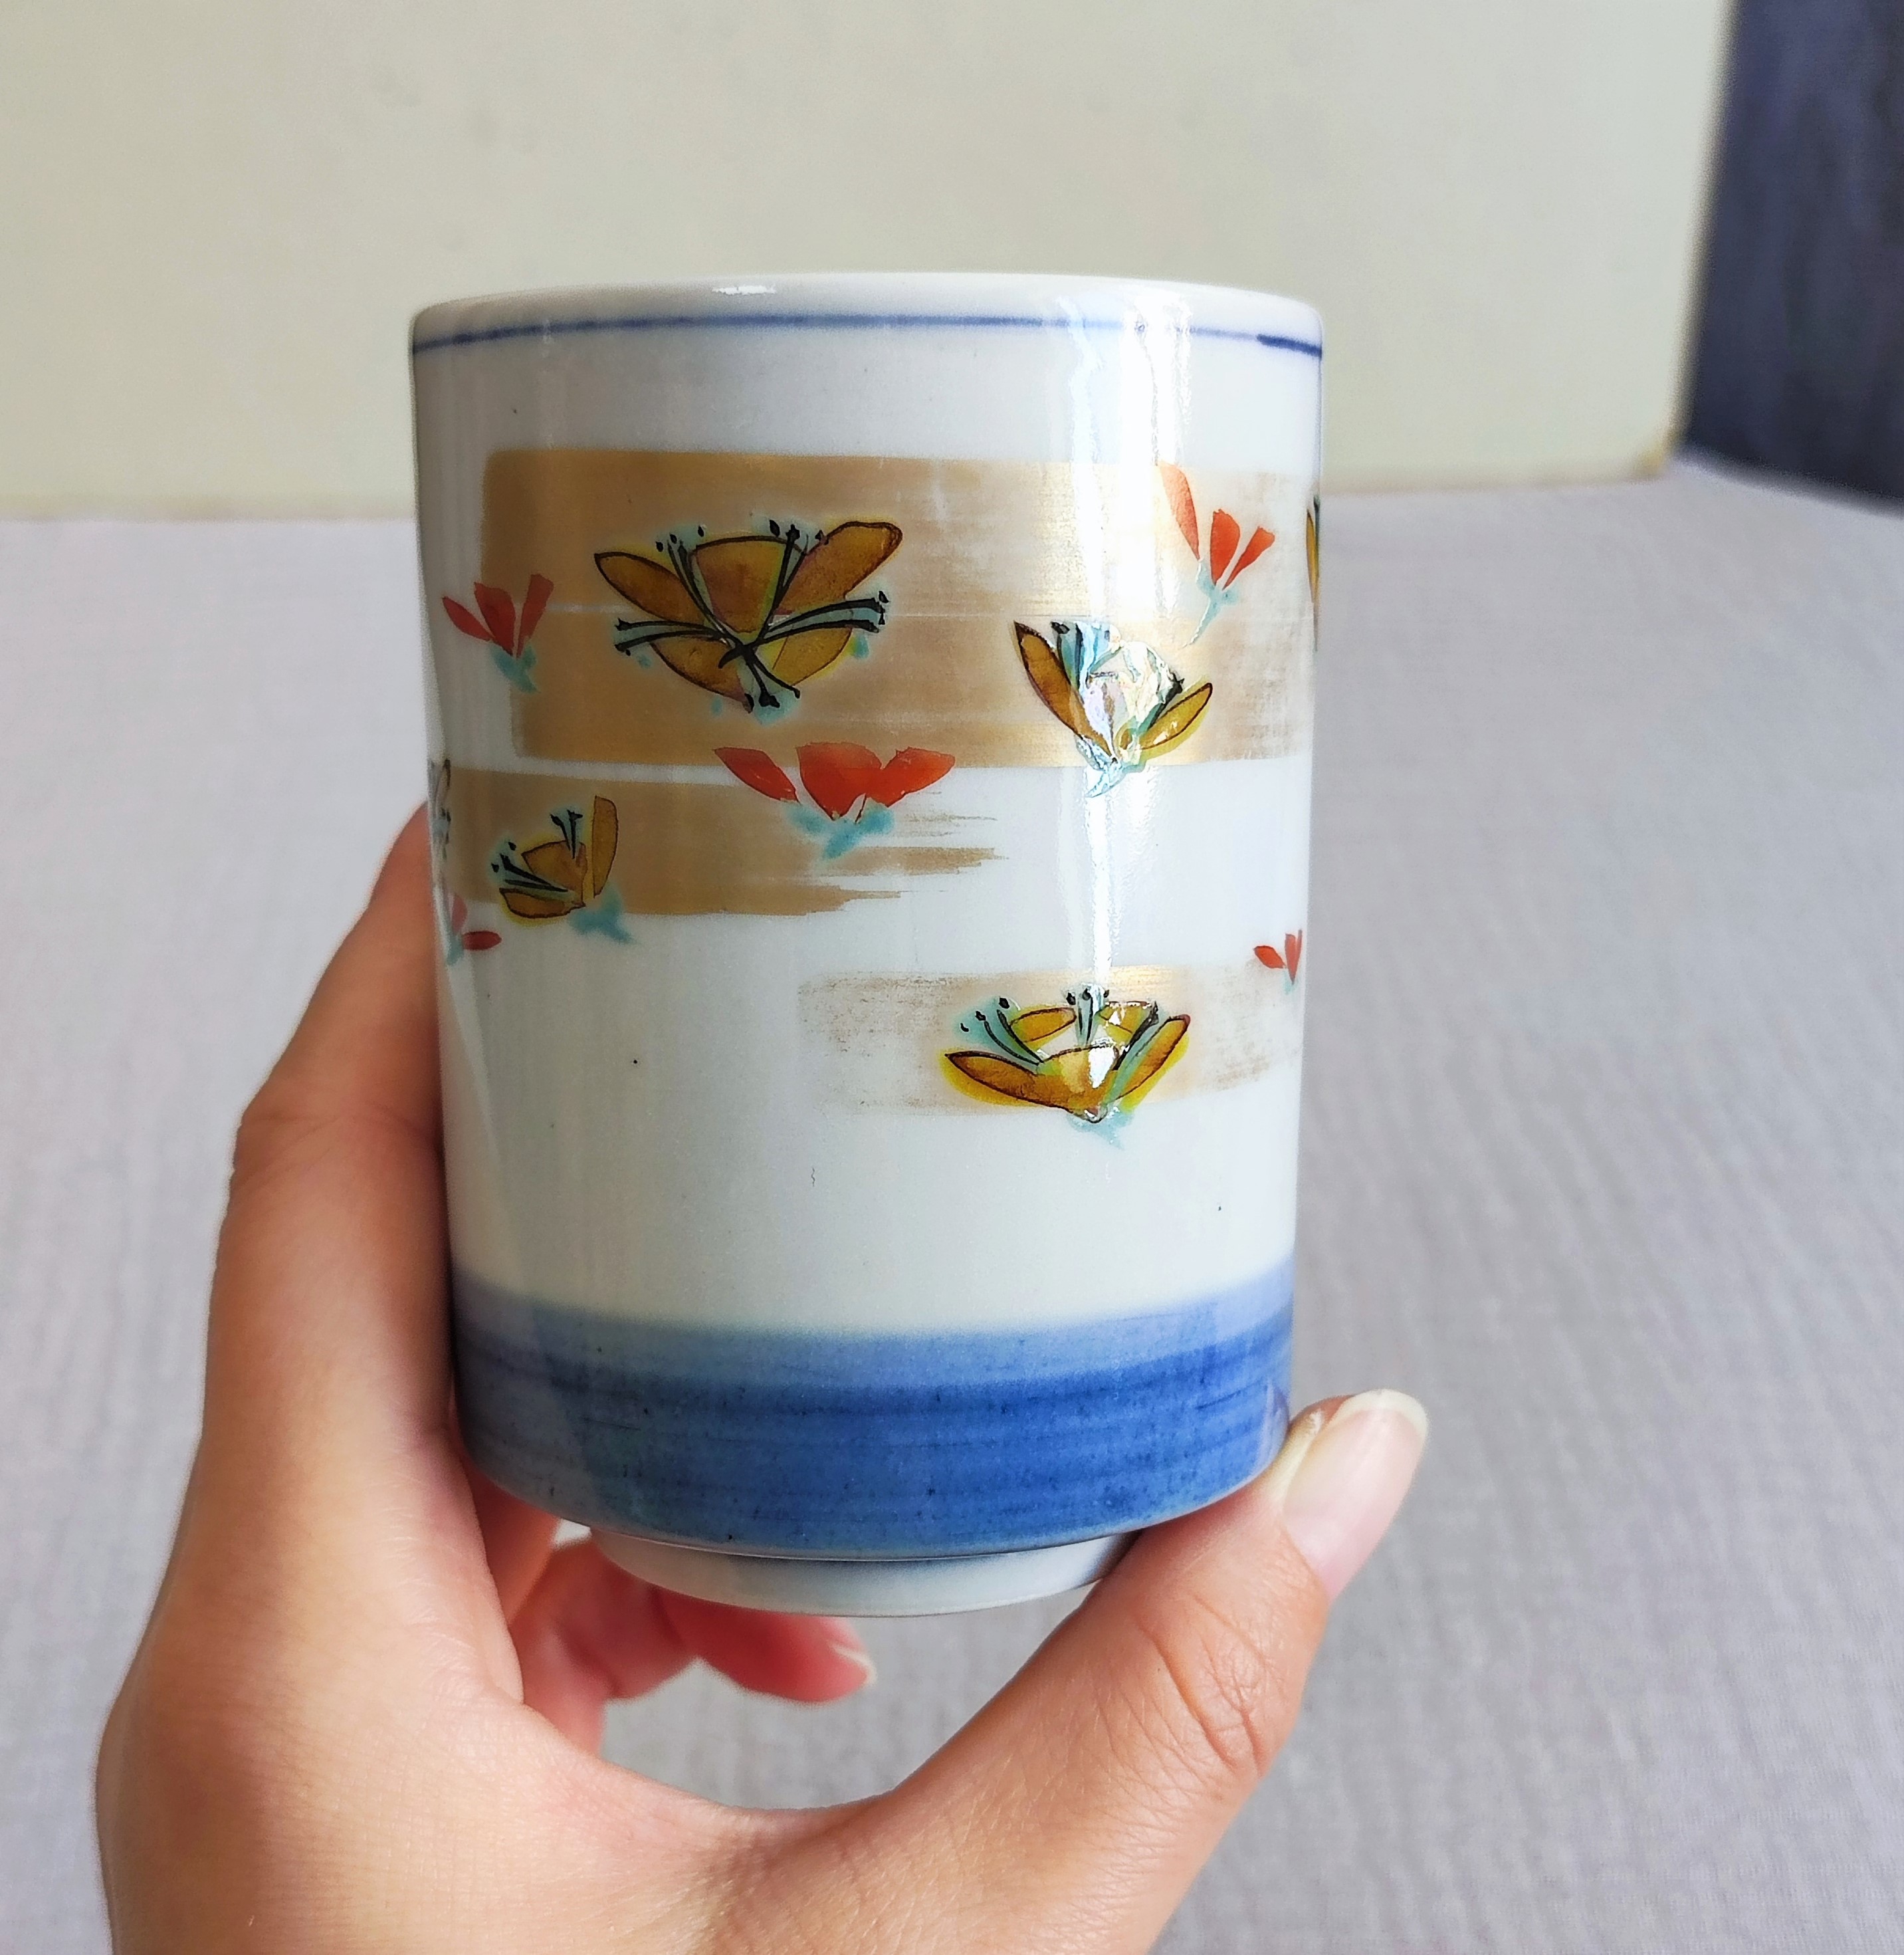 日本中古瓷器健底款汤吞杯茶杯日式茶道具 金彩花卉纹 无盒 包邮